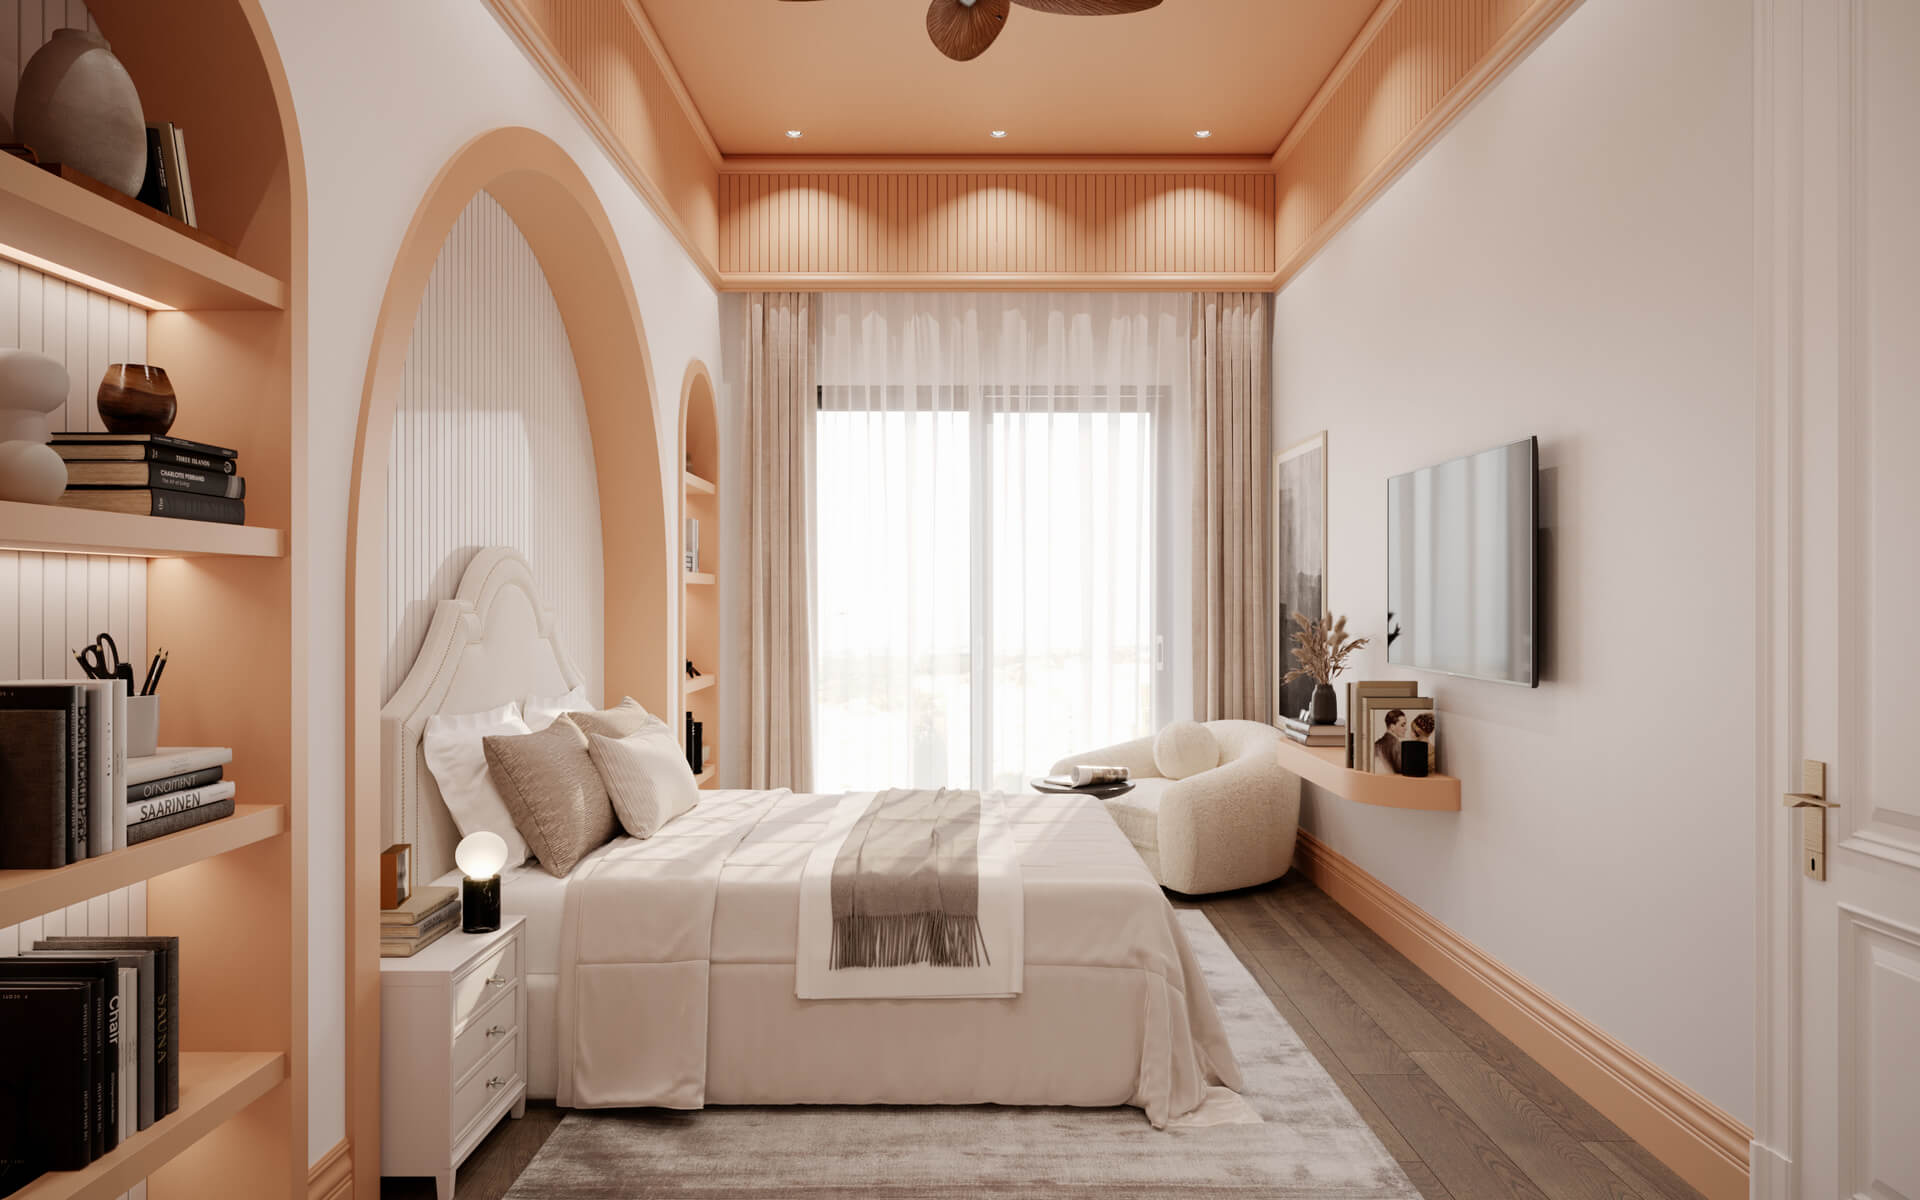  villa dekorasyonu 5184 Dubleks Apartman Dairesi Tasarımı Konutlar